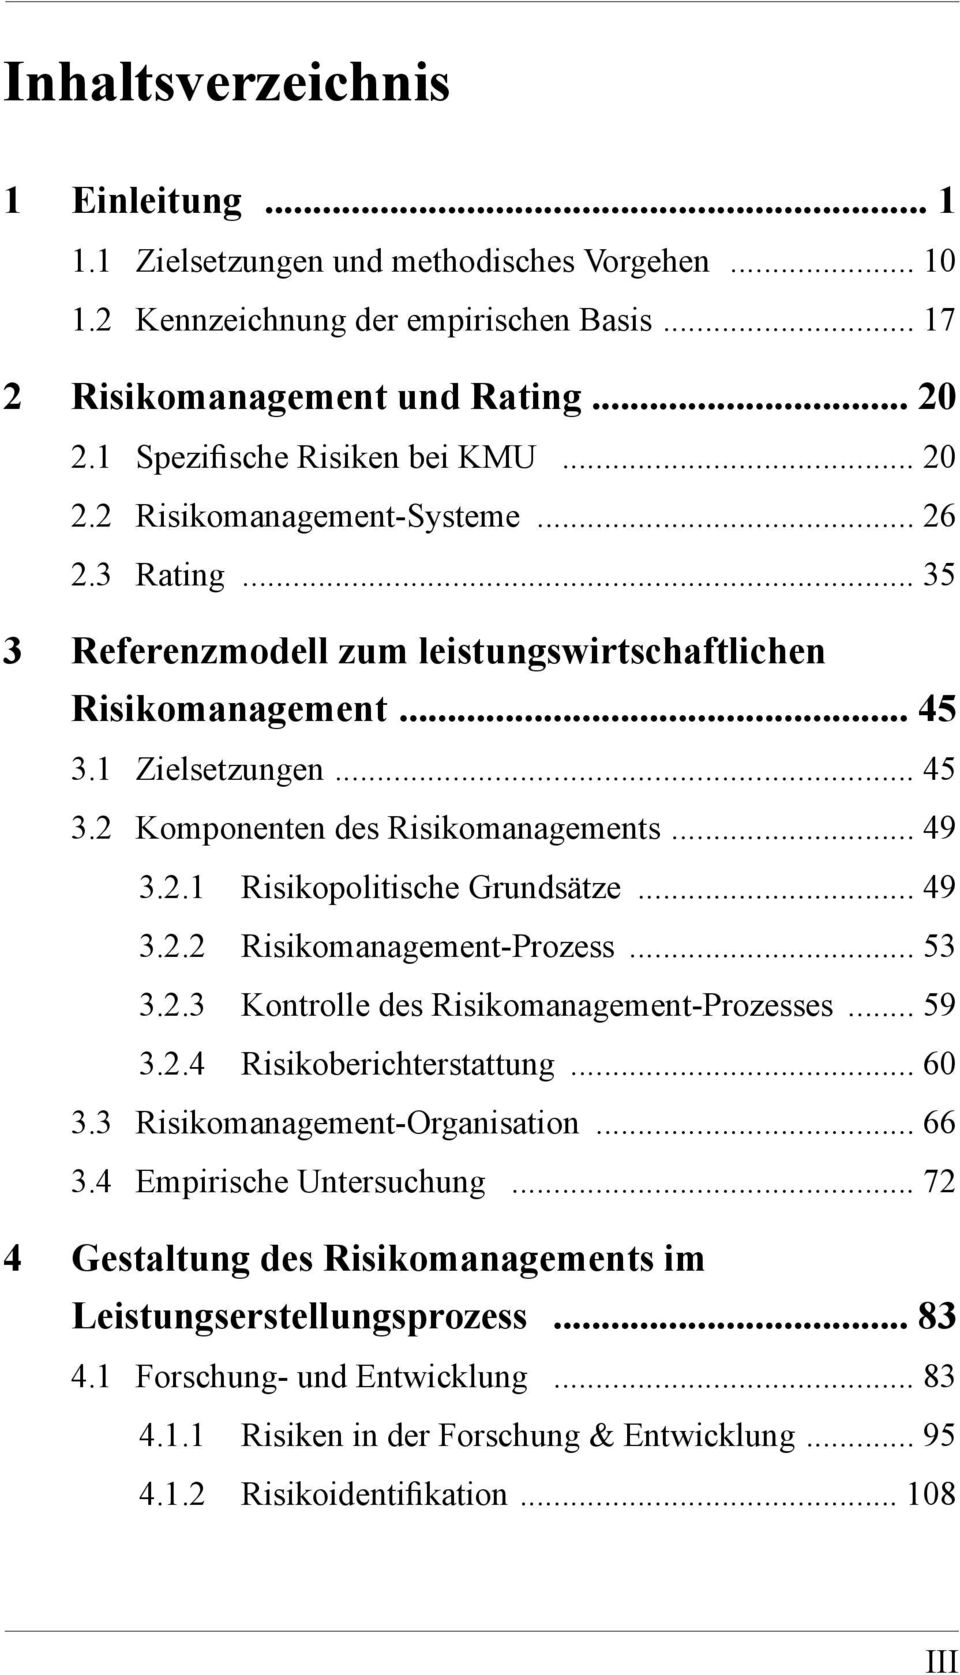 .. 49 3.2.1 Risikopolitische Grundsätze... 49 3.2.2 Risikomanagement-Prozess... 53 3.2.3 Kontrolle des Risikomanagement-Prozesses... 59 3.2.4 Risikoberichterstattung... 60 3.